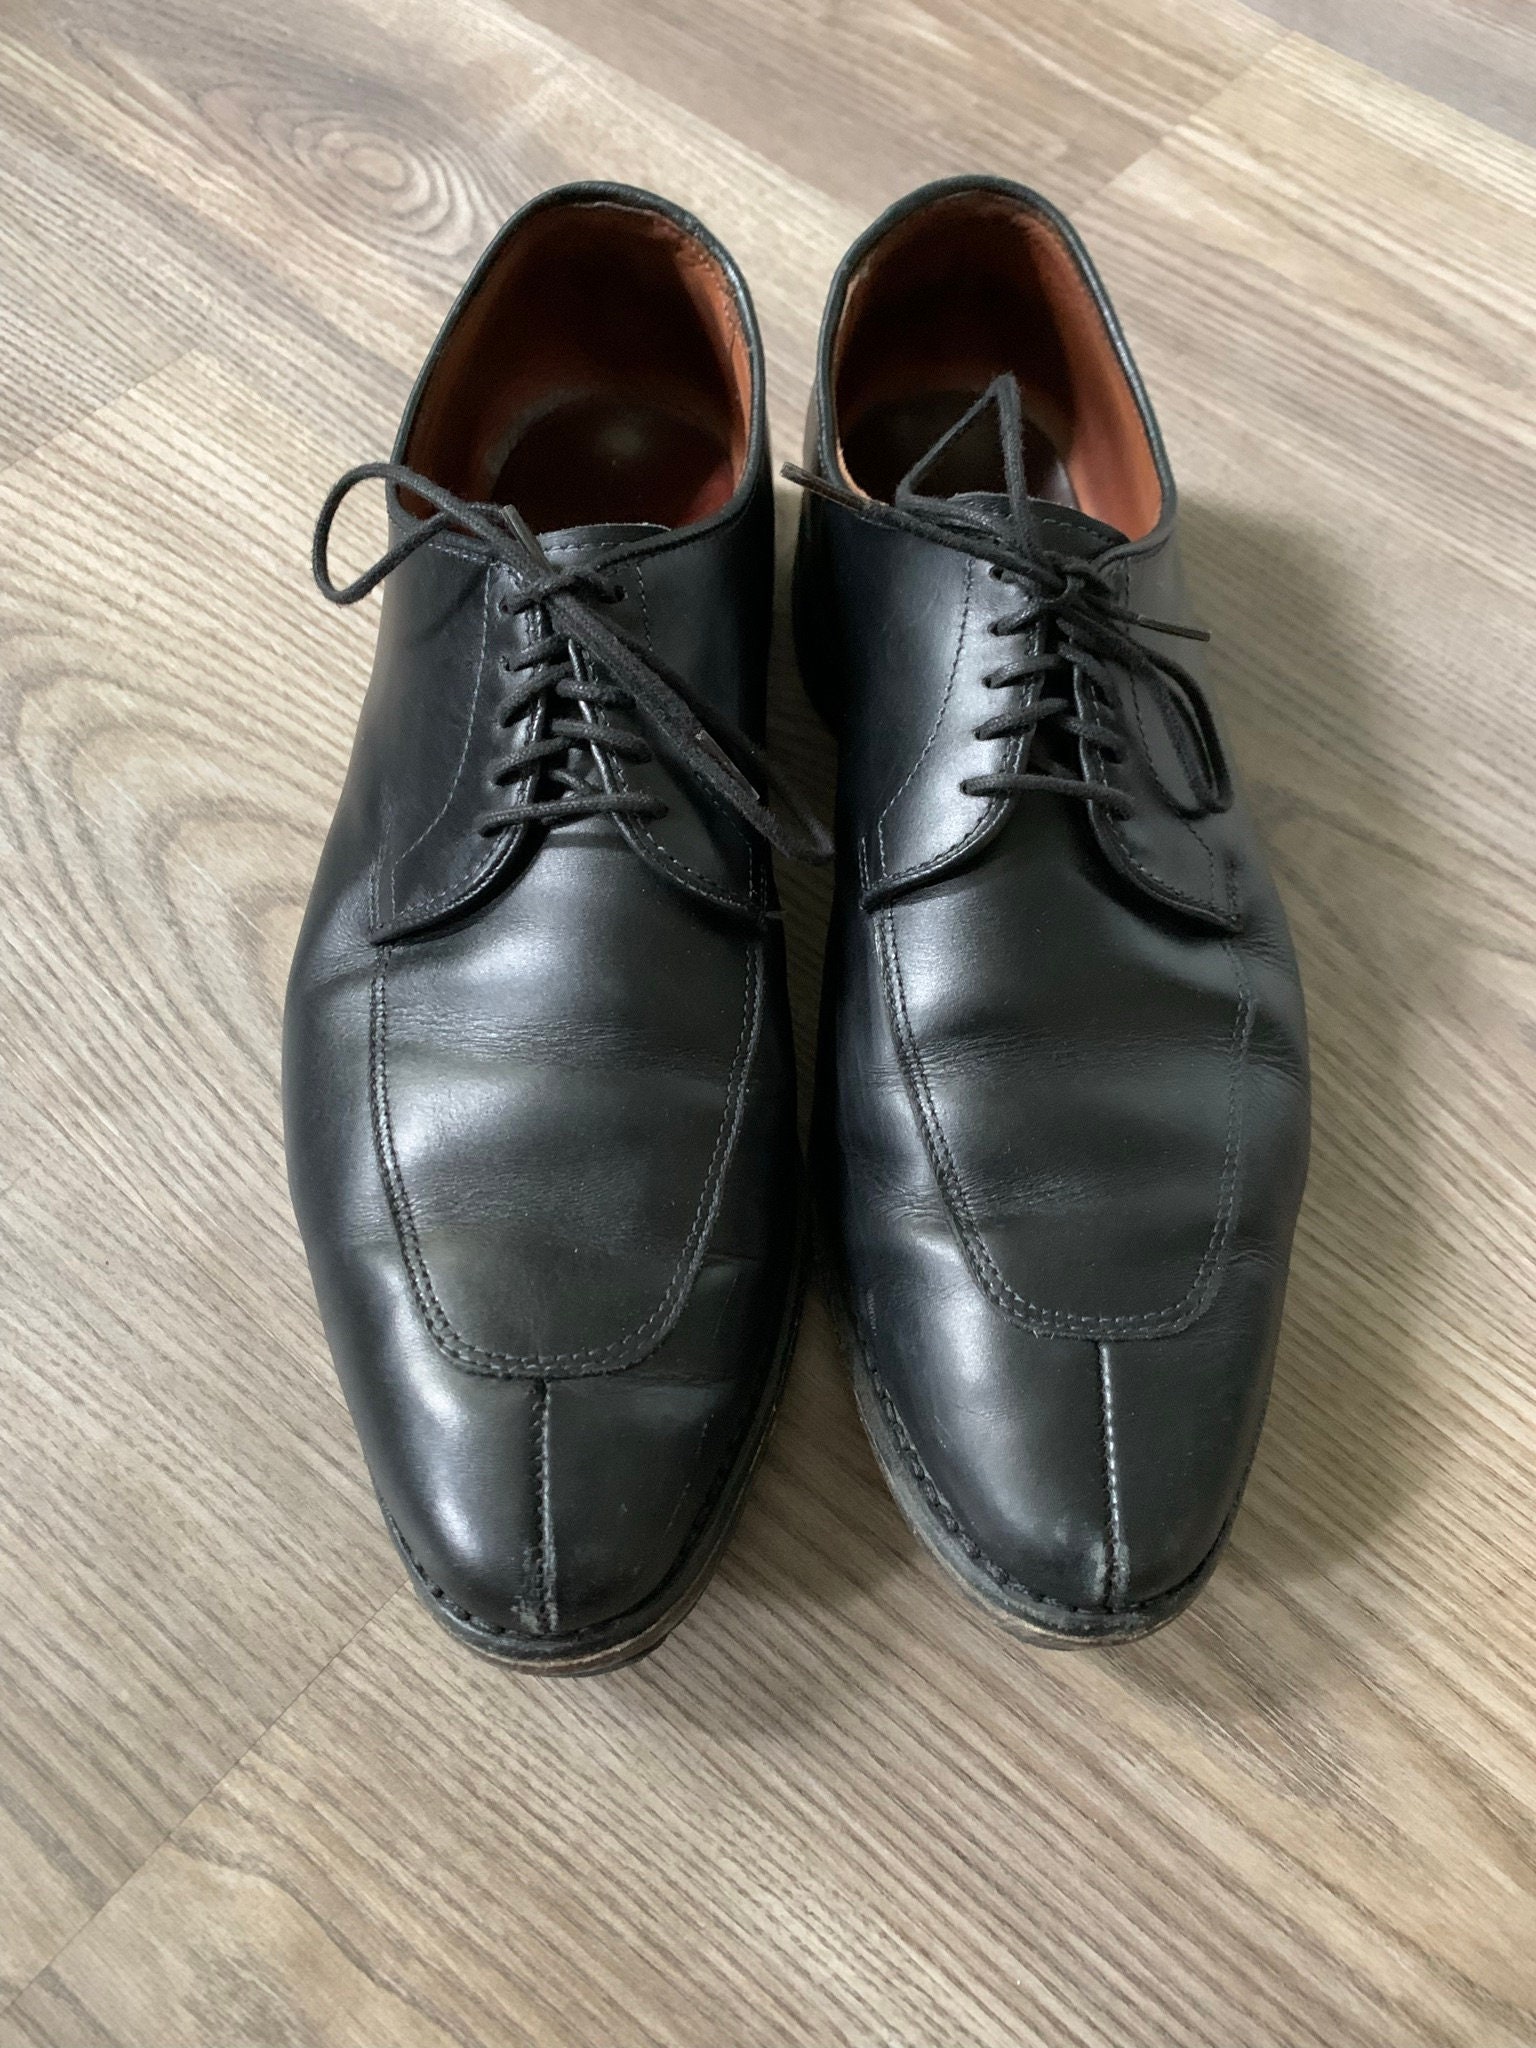 Vintage Allen Edmonds Delray Black Split Toe Shoes 10D | Etsy